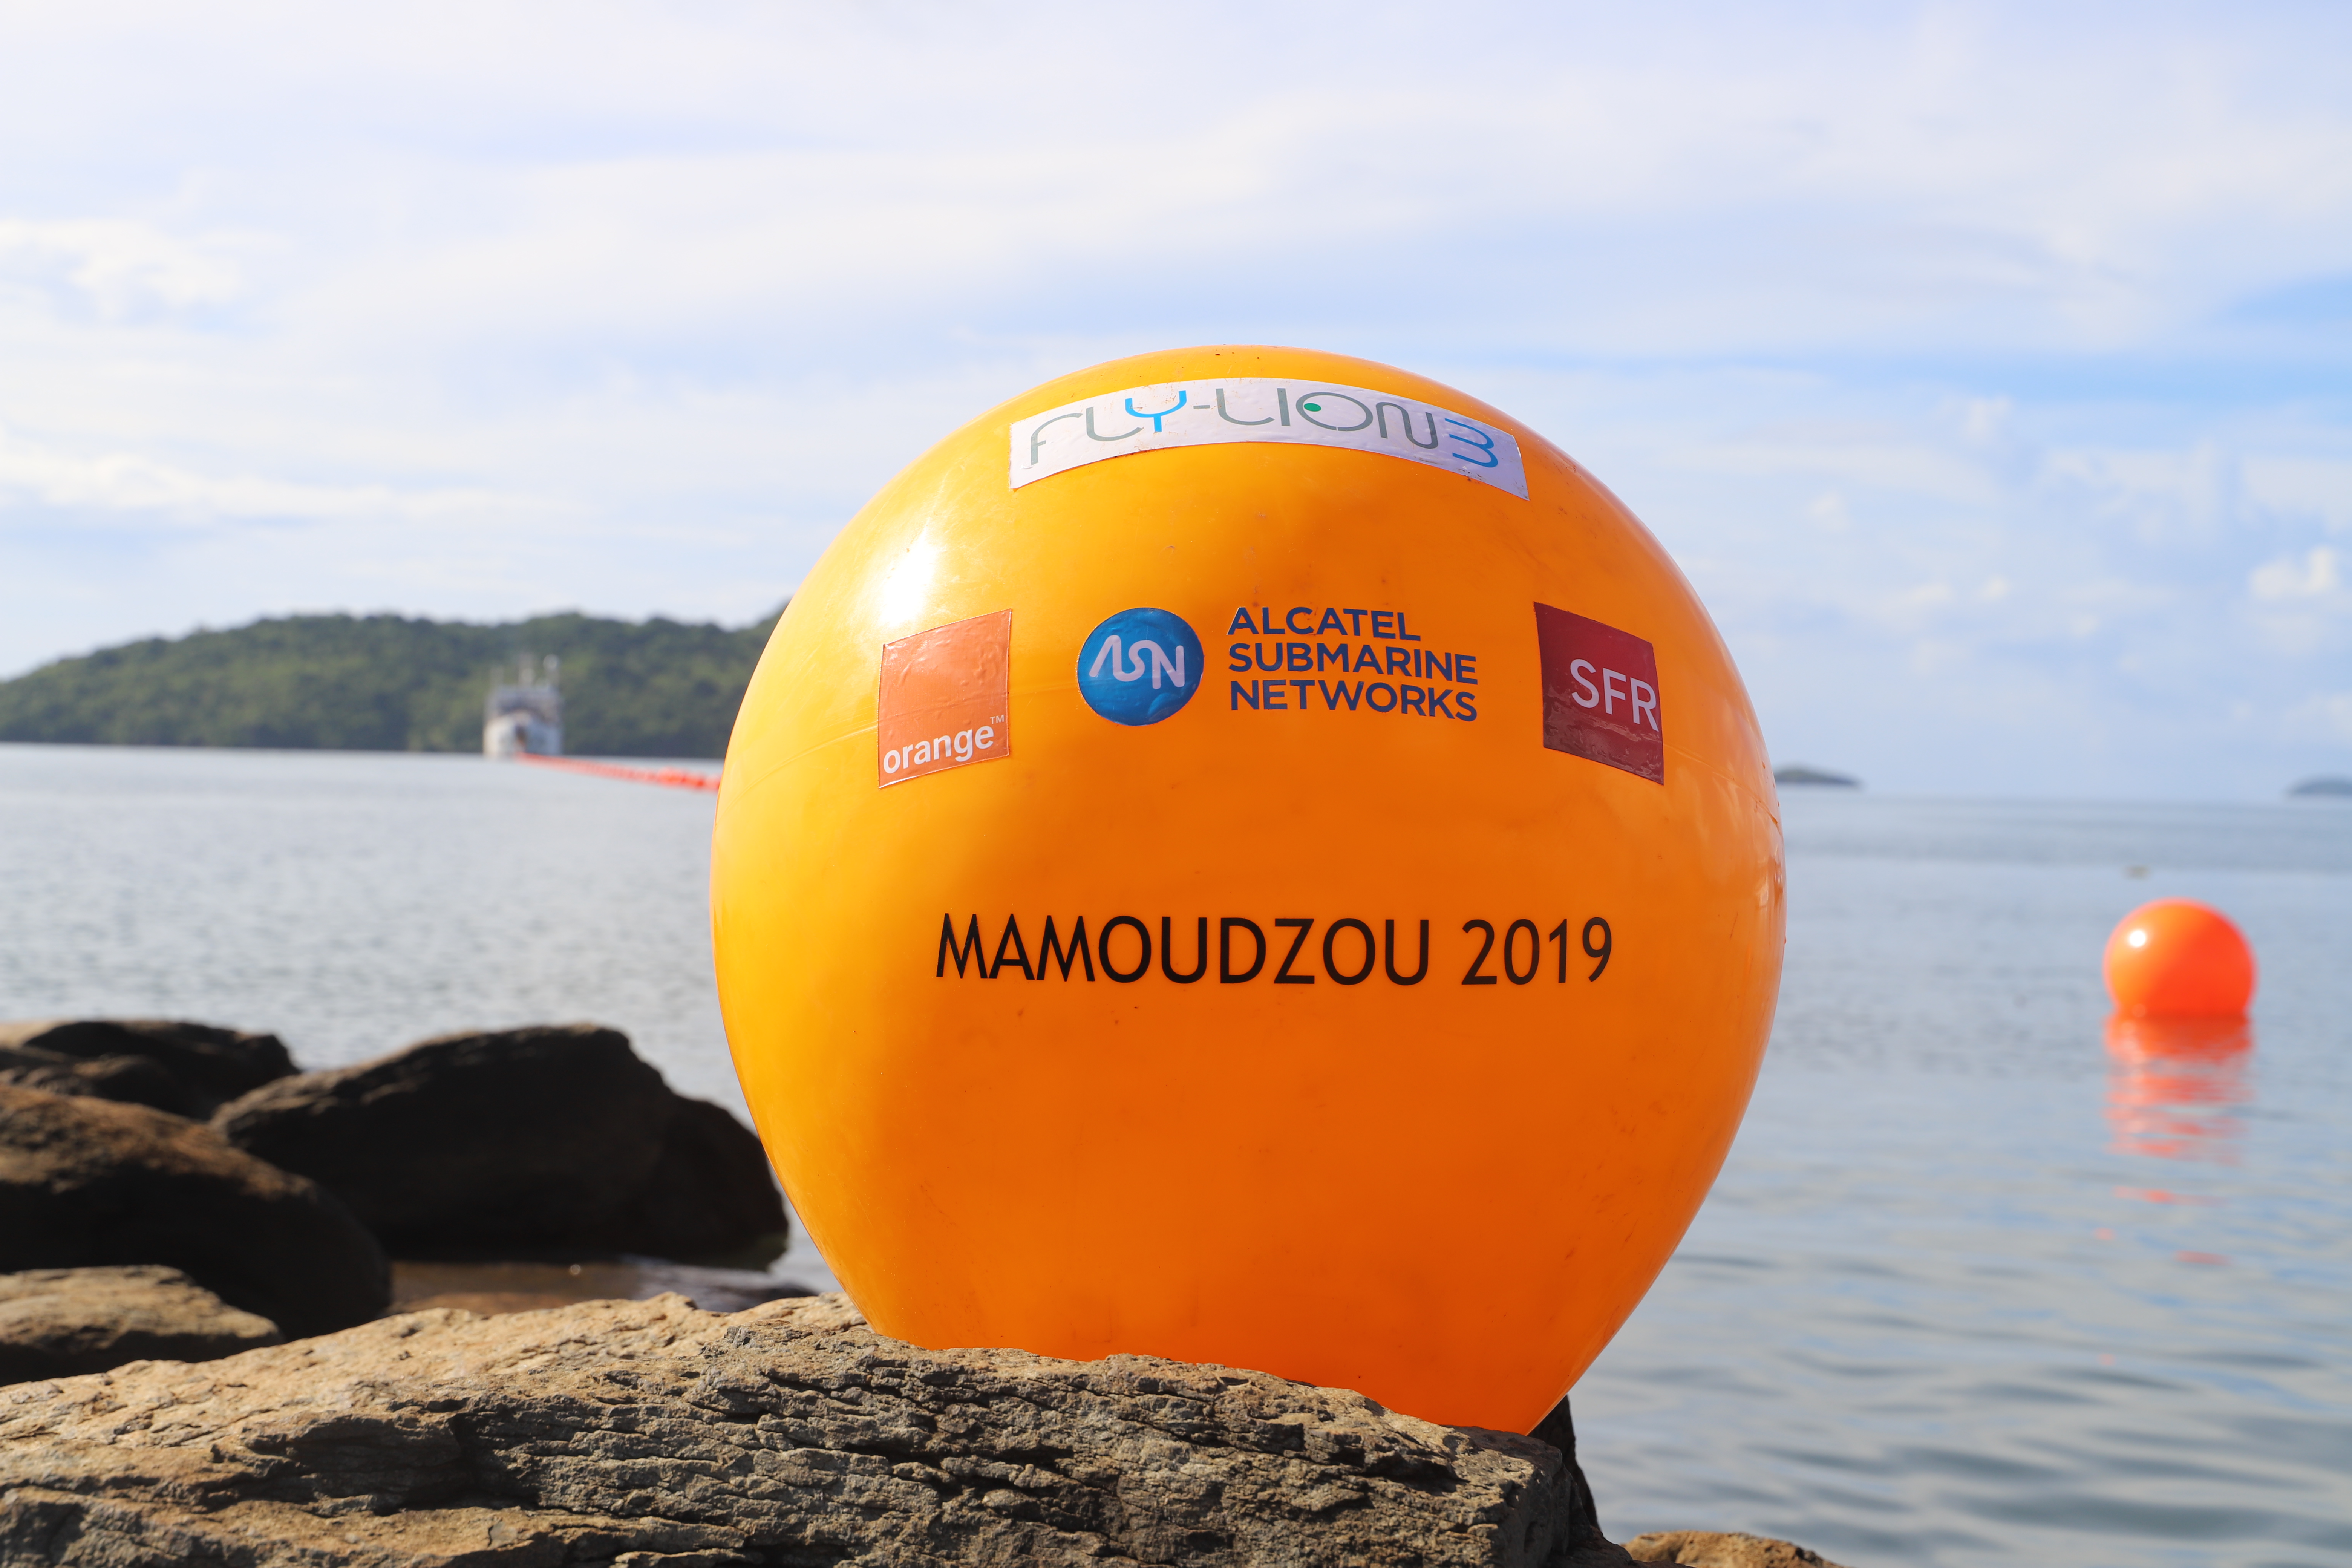 Numérique à Mayotte: Le câble sous-marin très haut débit FLY-LION3 atterrit à Mayotte